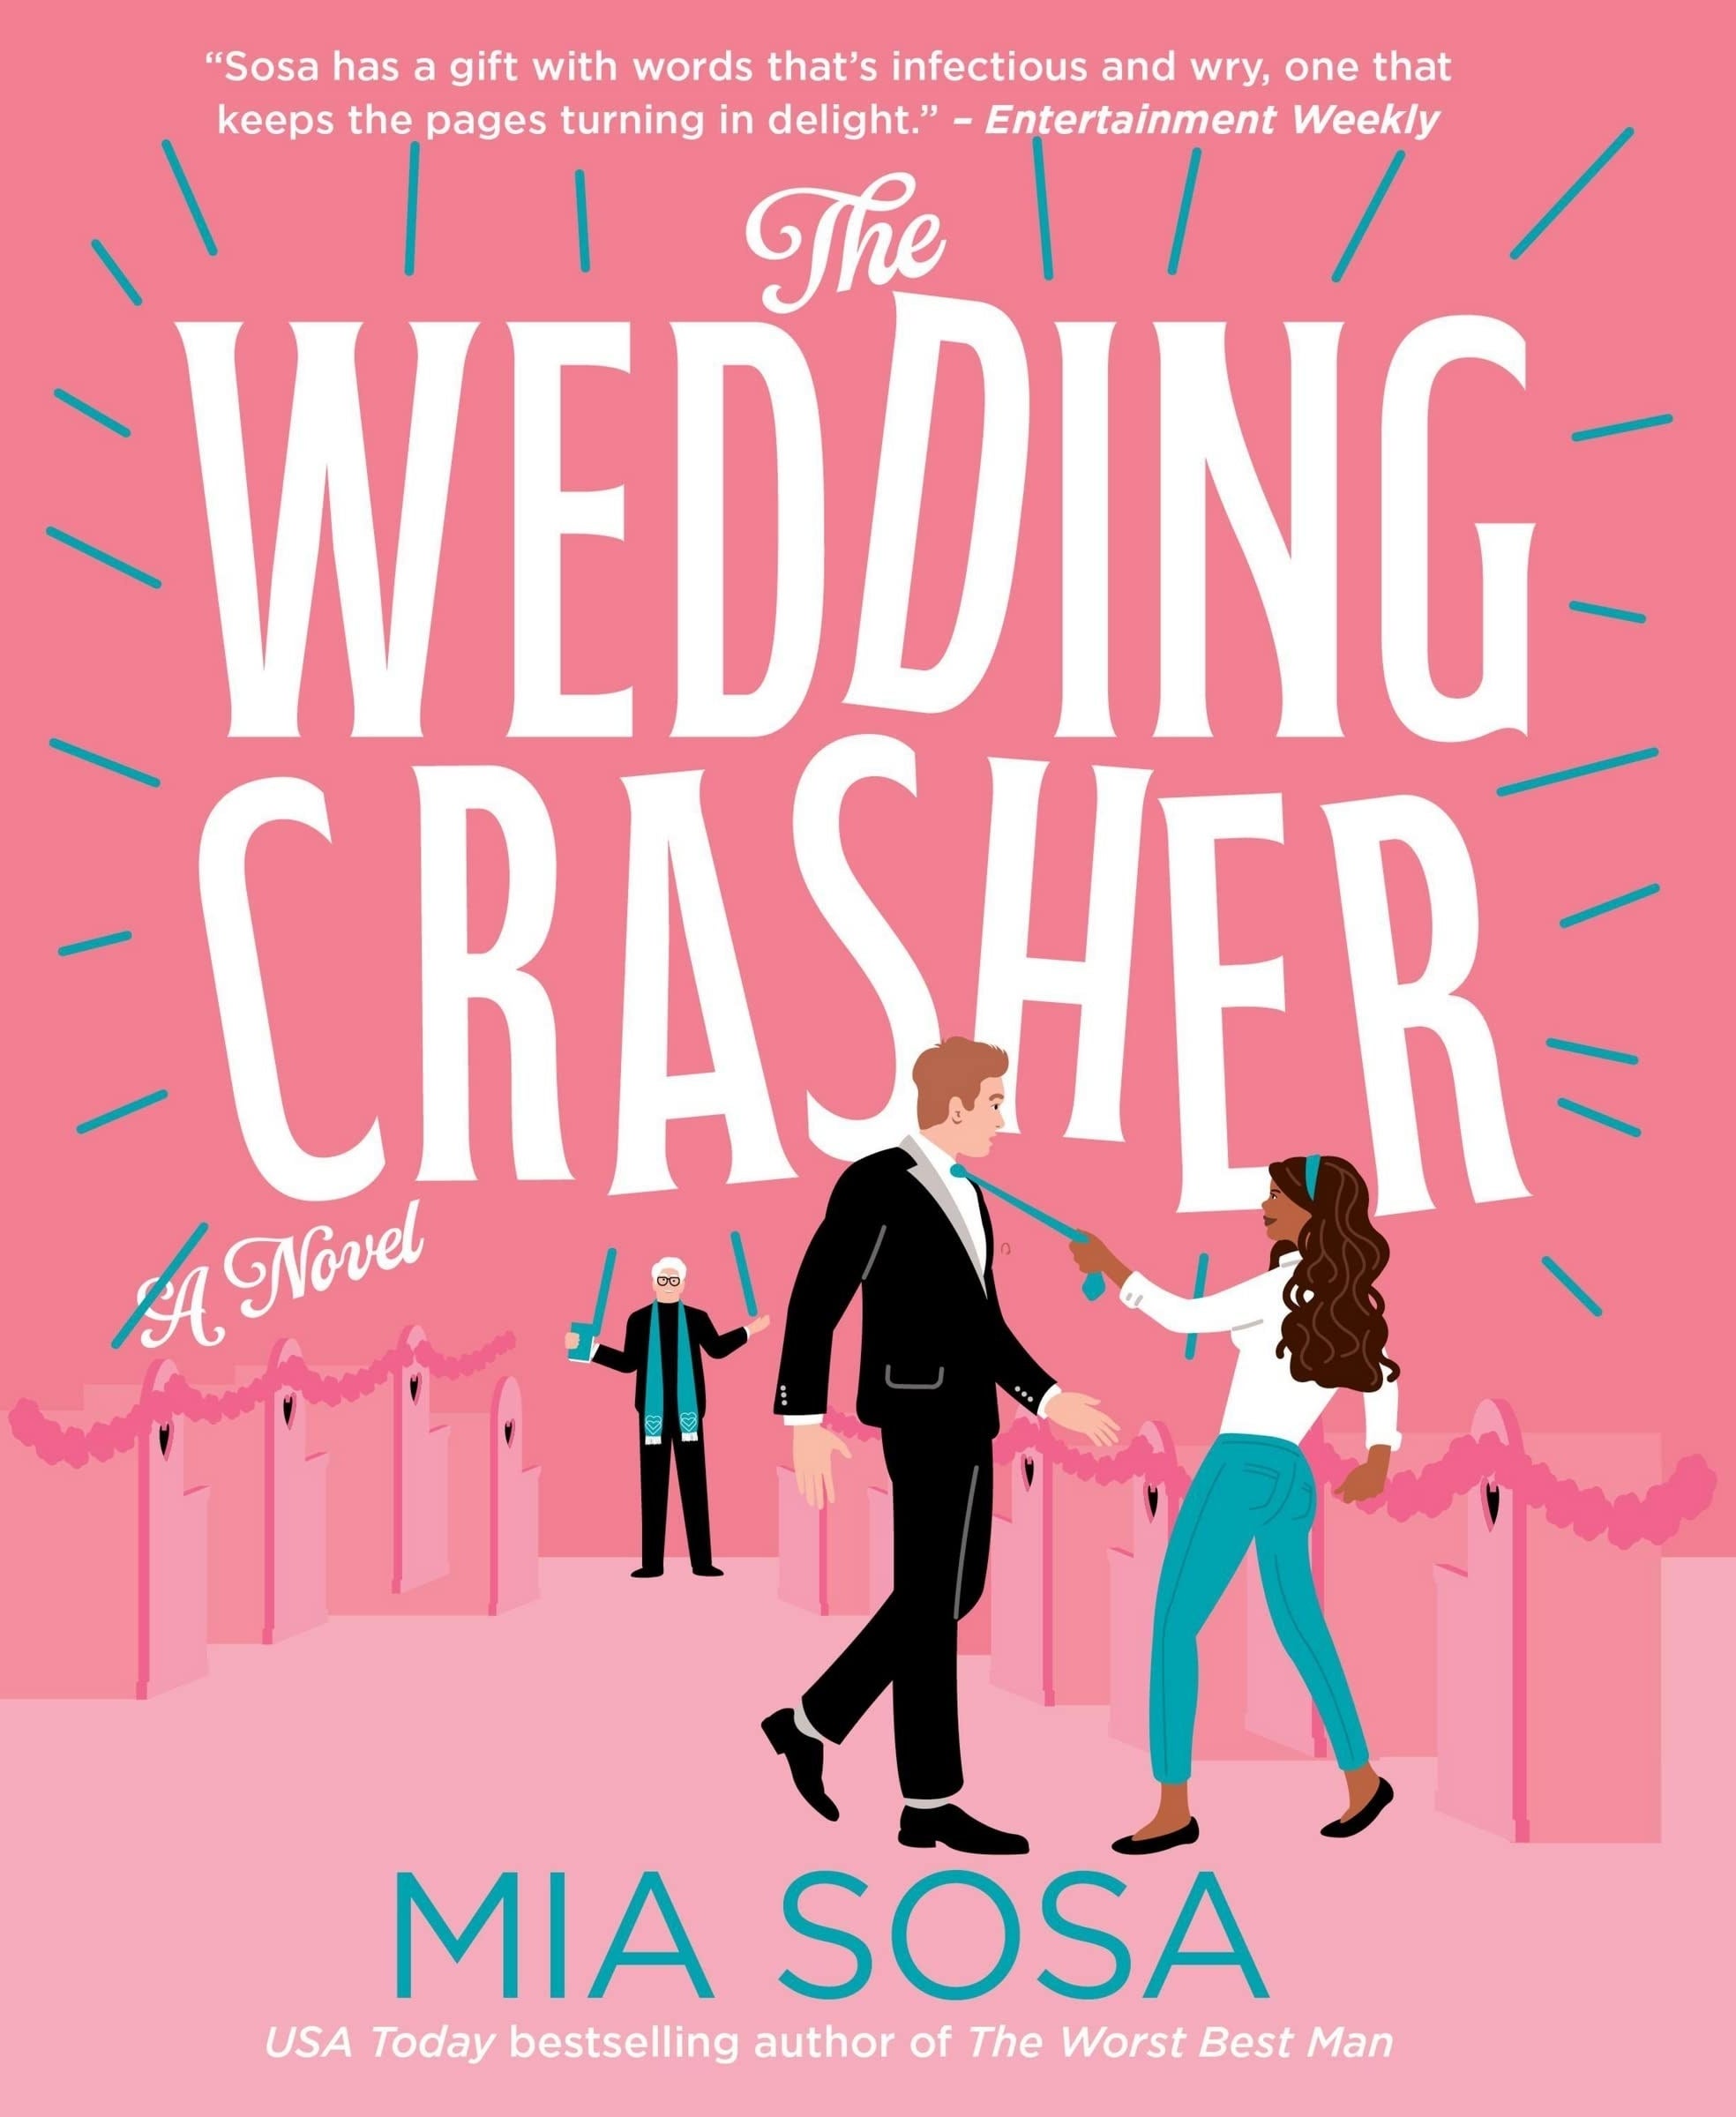 The Wedding Crasher book cover. Book by Mia Sosa